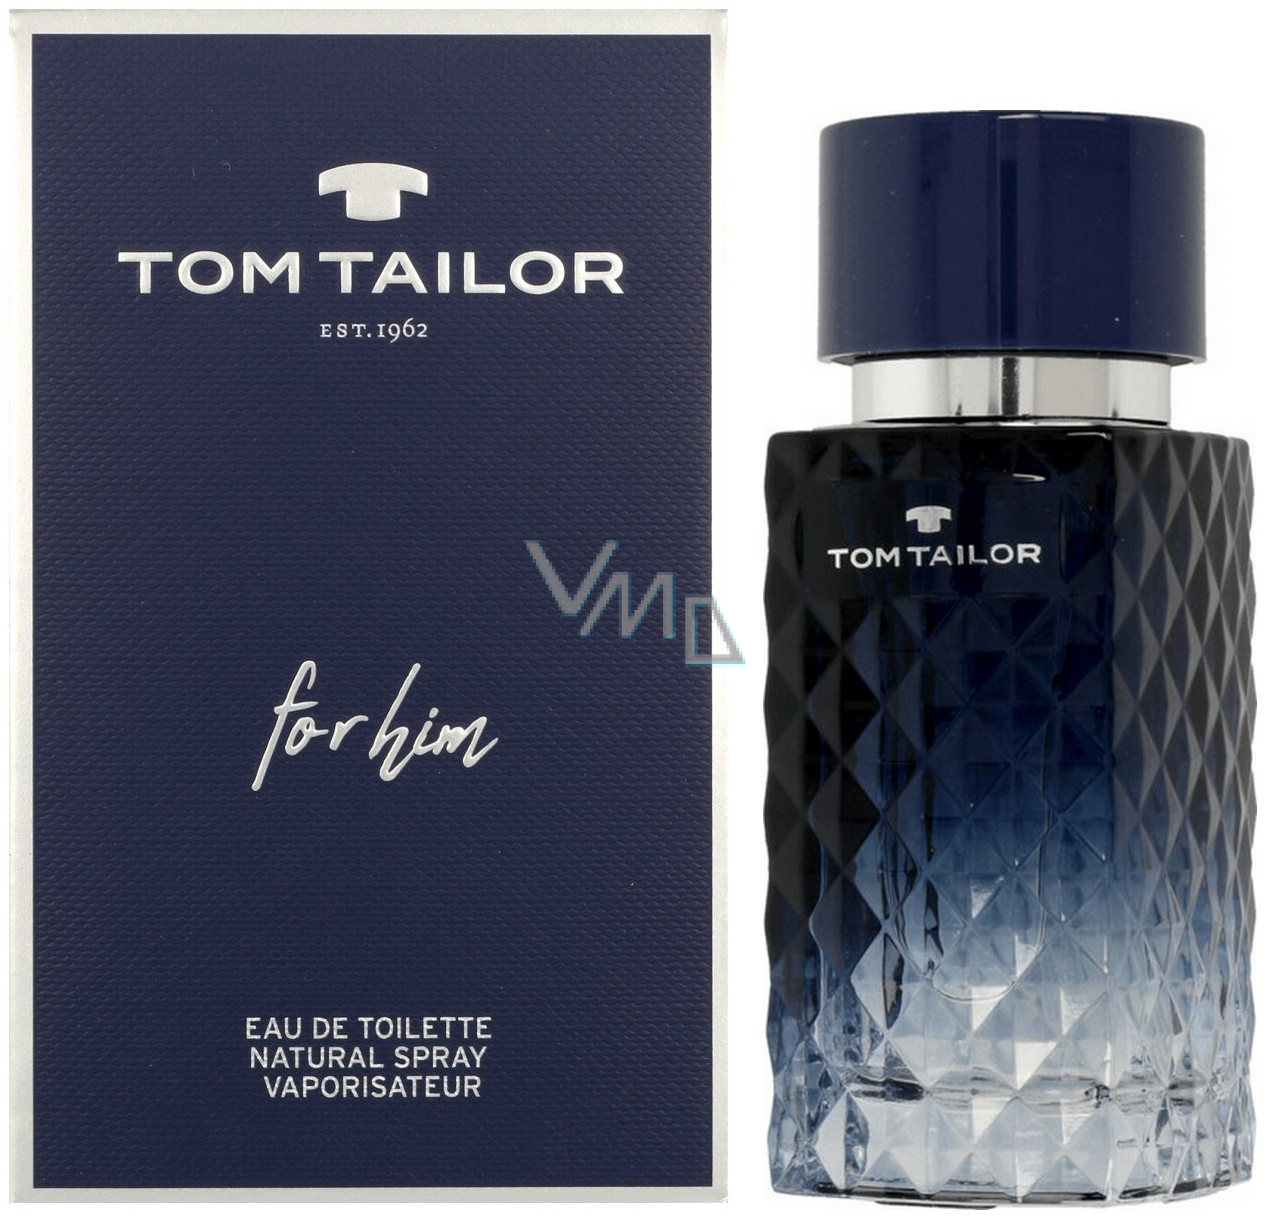 Tom Tailor for Him Eau de Toilette 30 ml - VMD parfumerie - drogerie